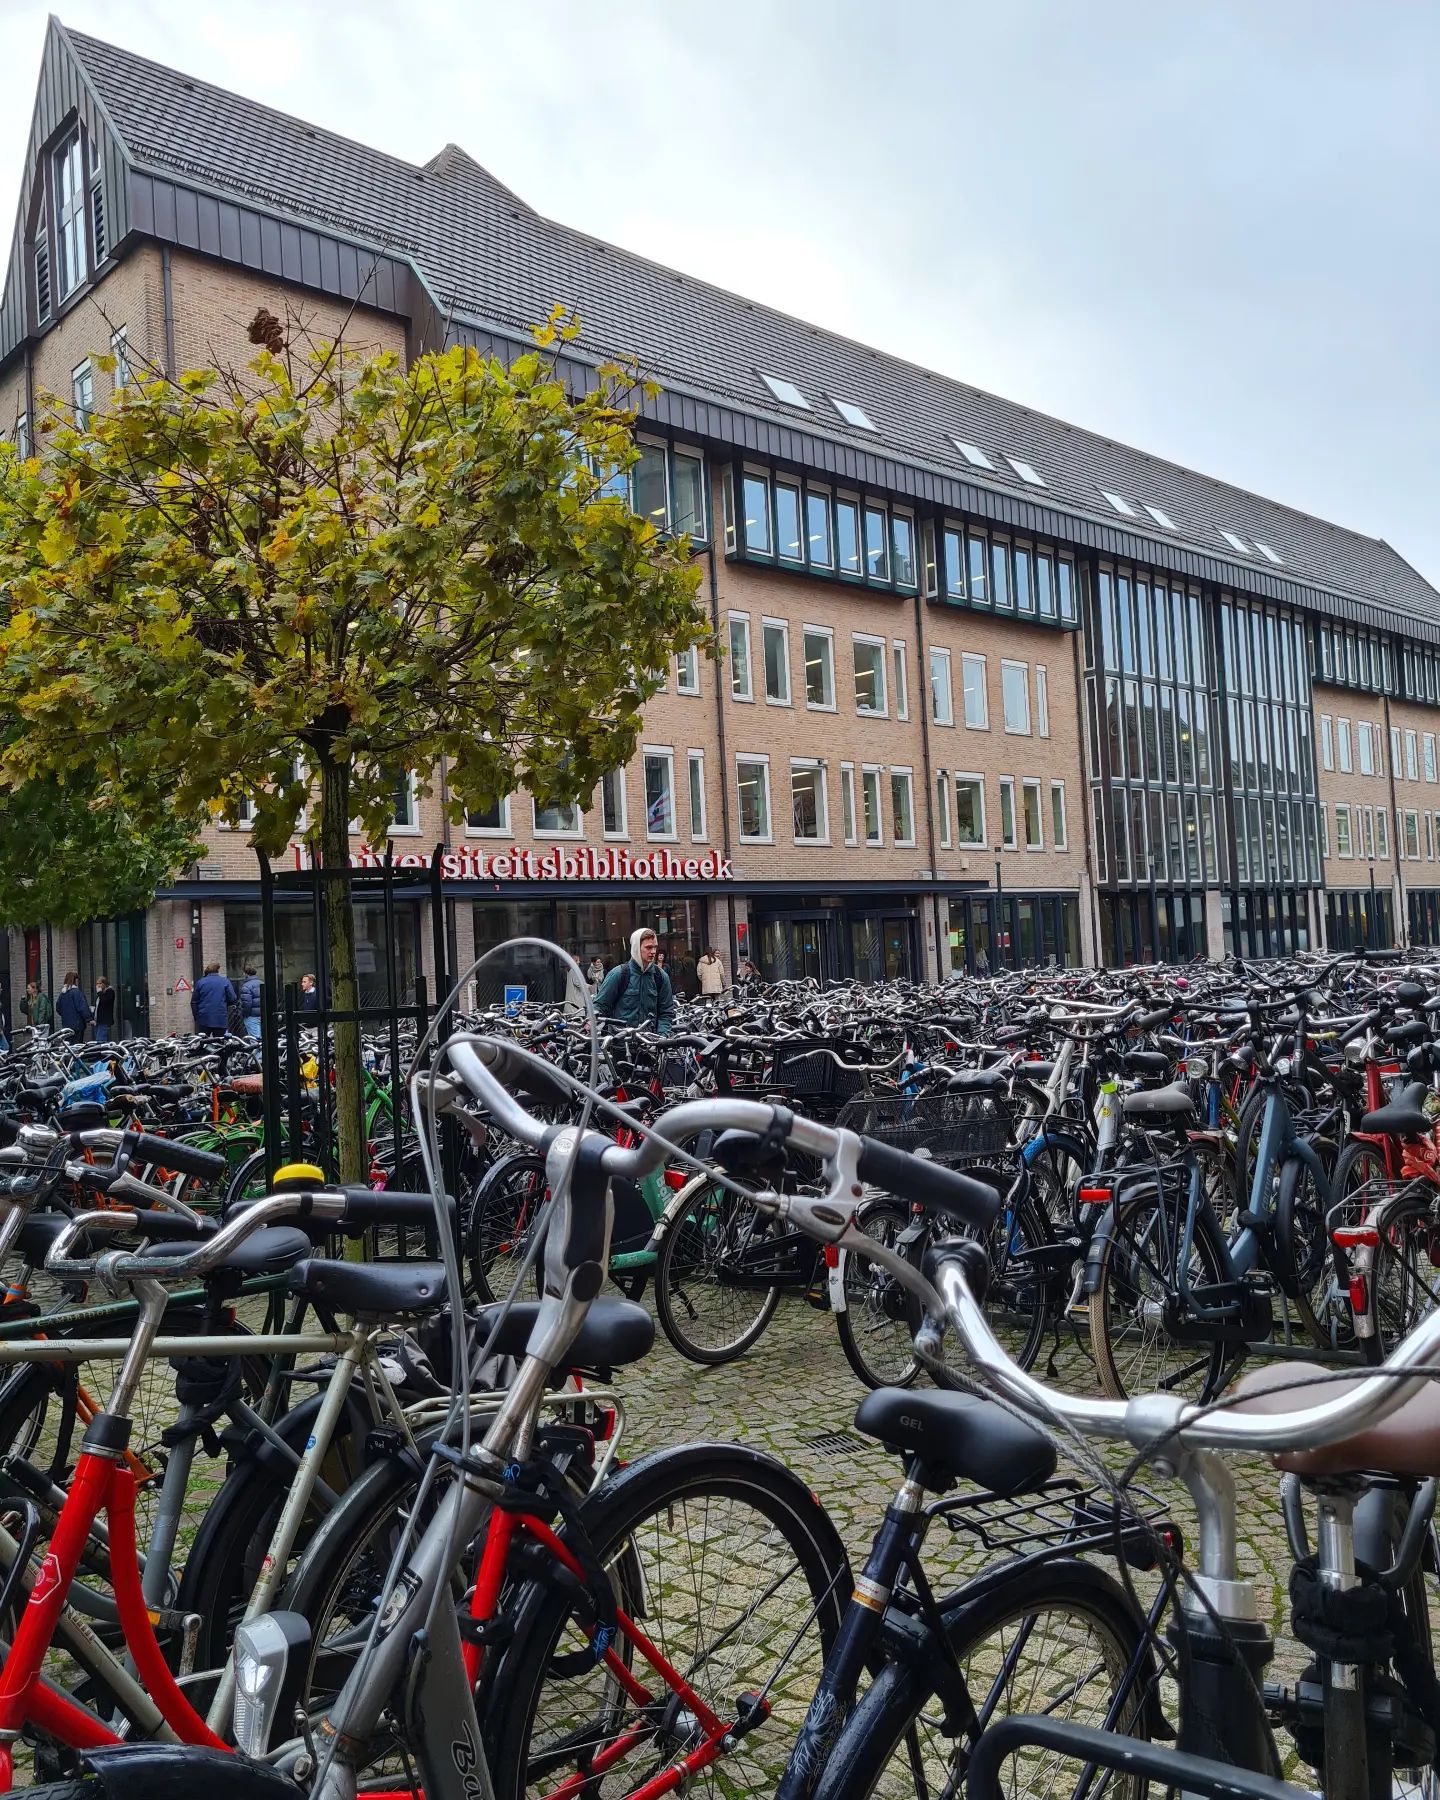 Met de fiets naar de binnenstad? Per 1 februari extra regels voor parkeren op straat